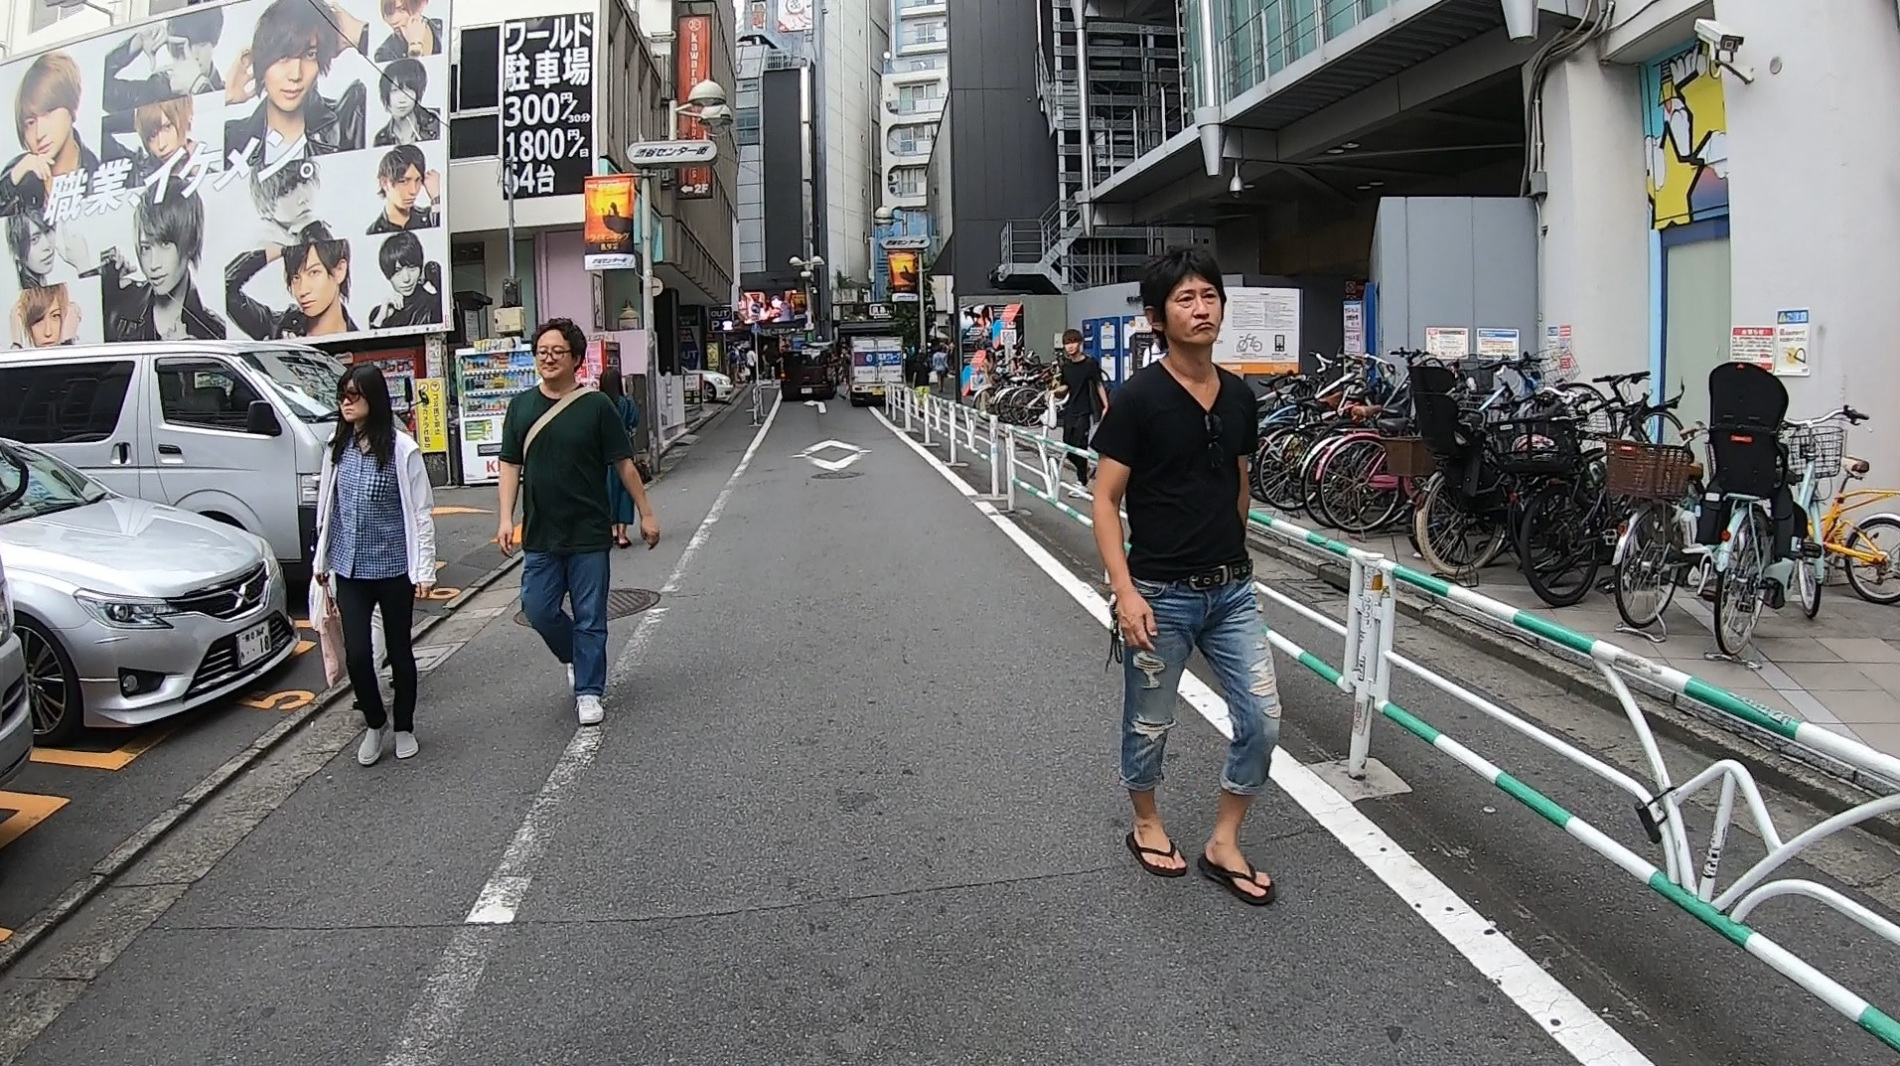 Boczna uliczka w dzielnica Shibuya  w Tokio